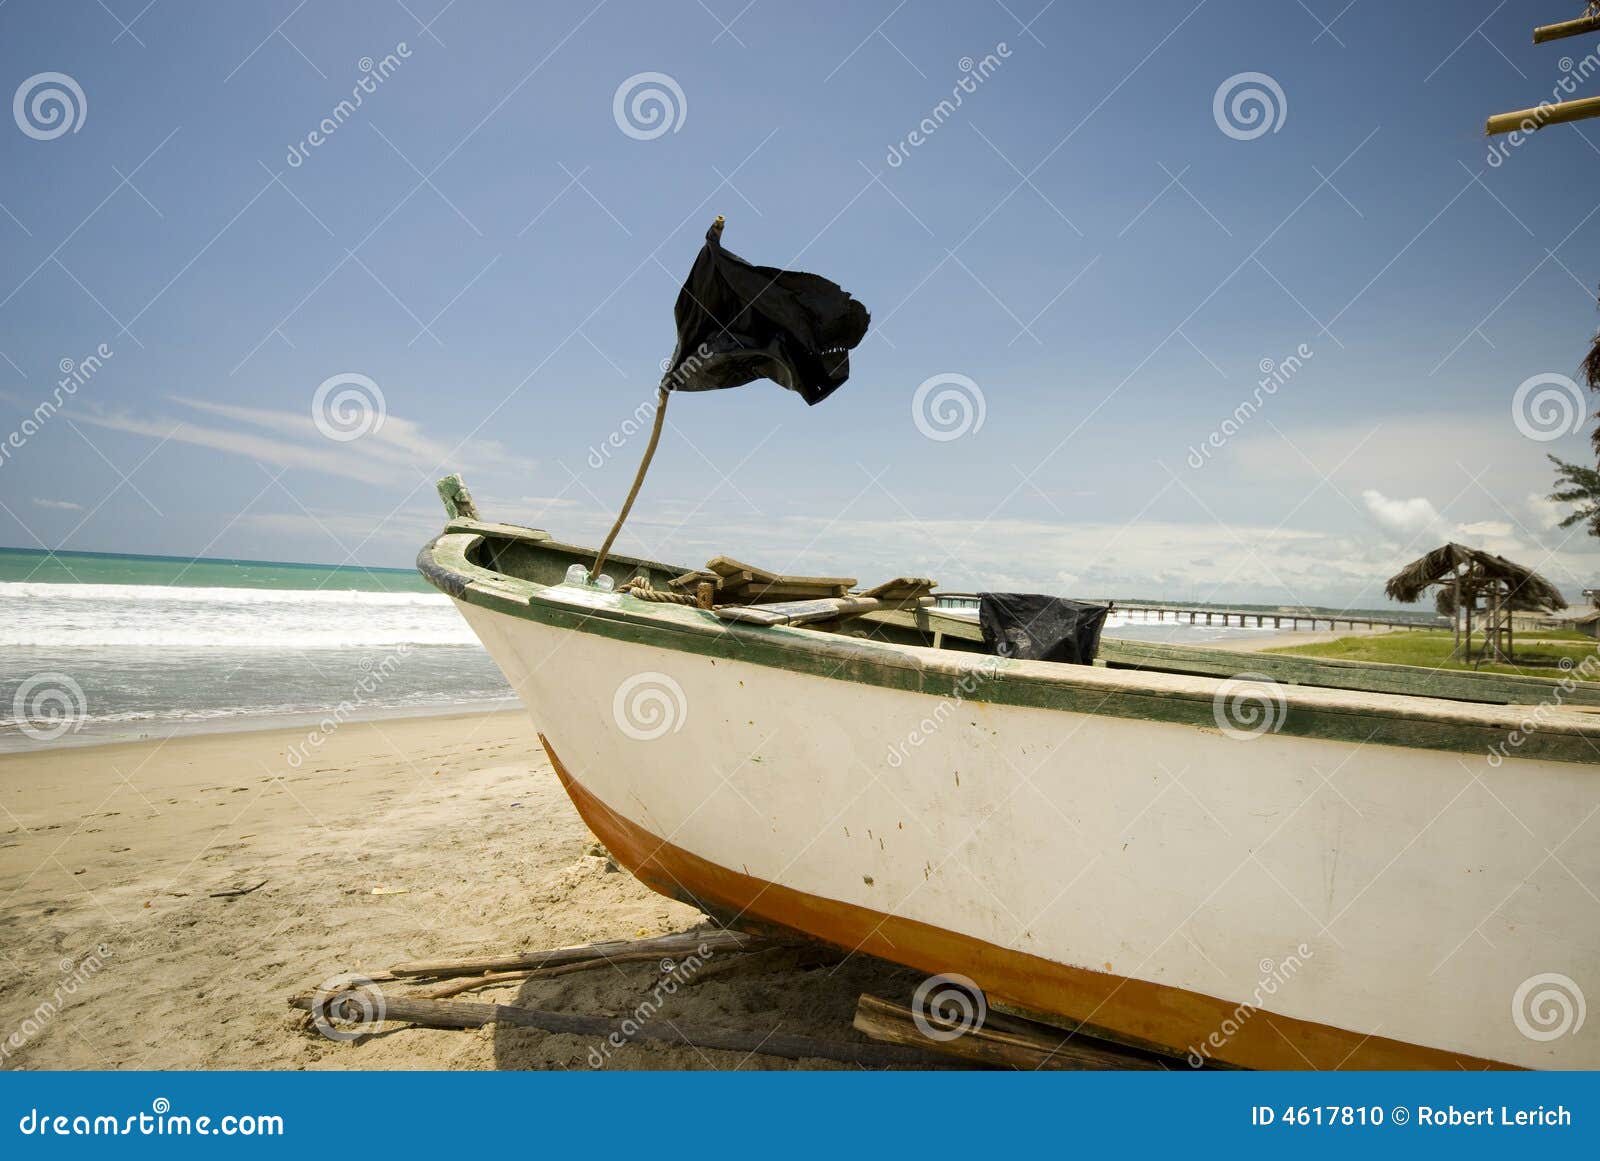 fishing boat on ruta del sol ecuador